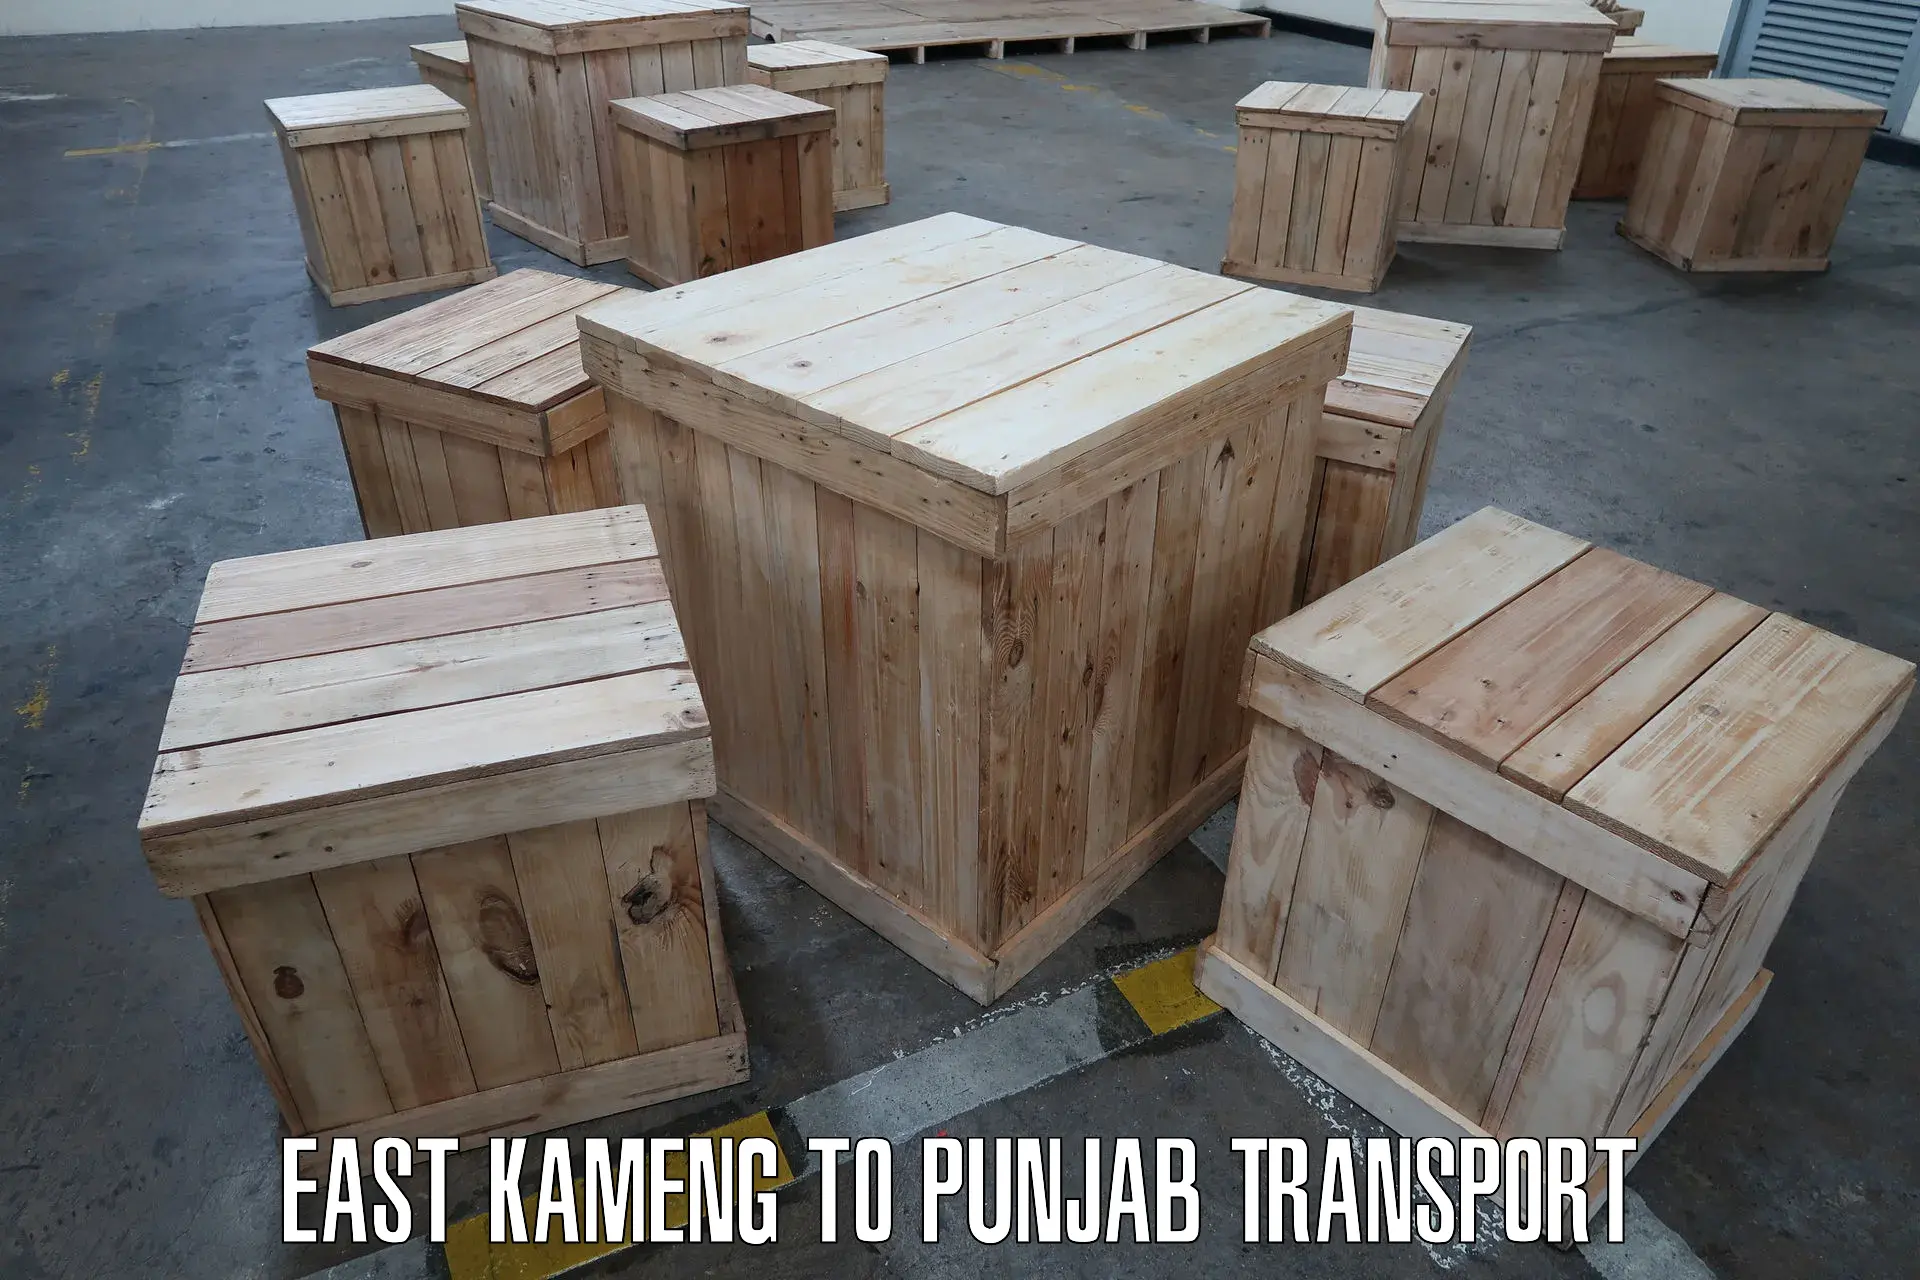 Furniture transport service East Kameng to Phillaur